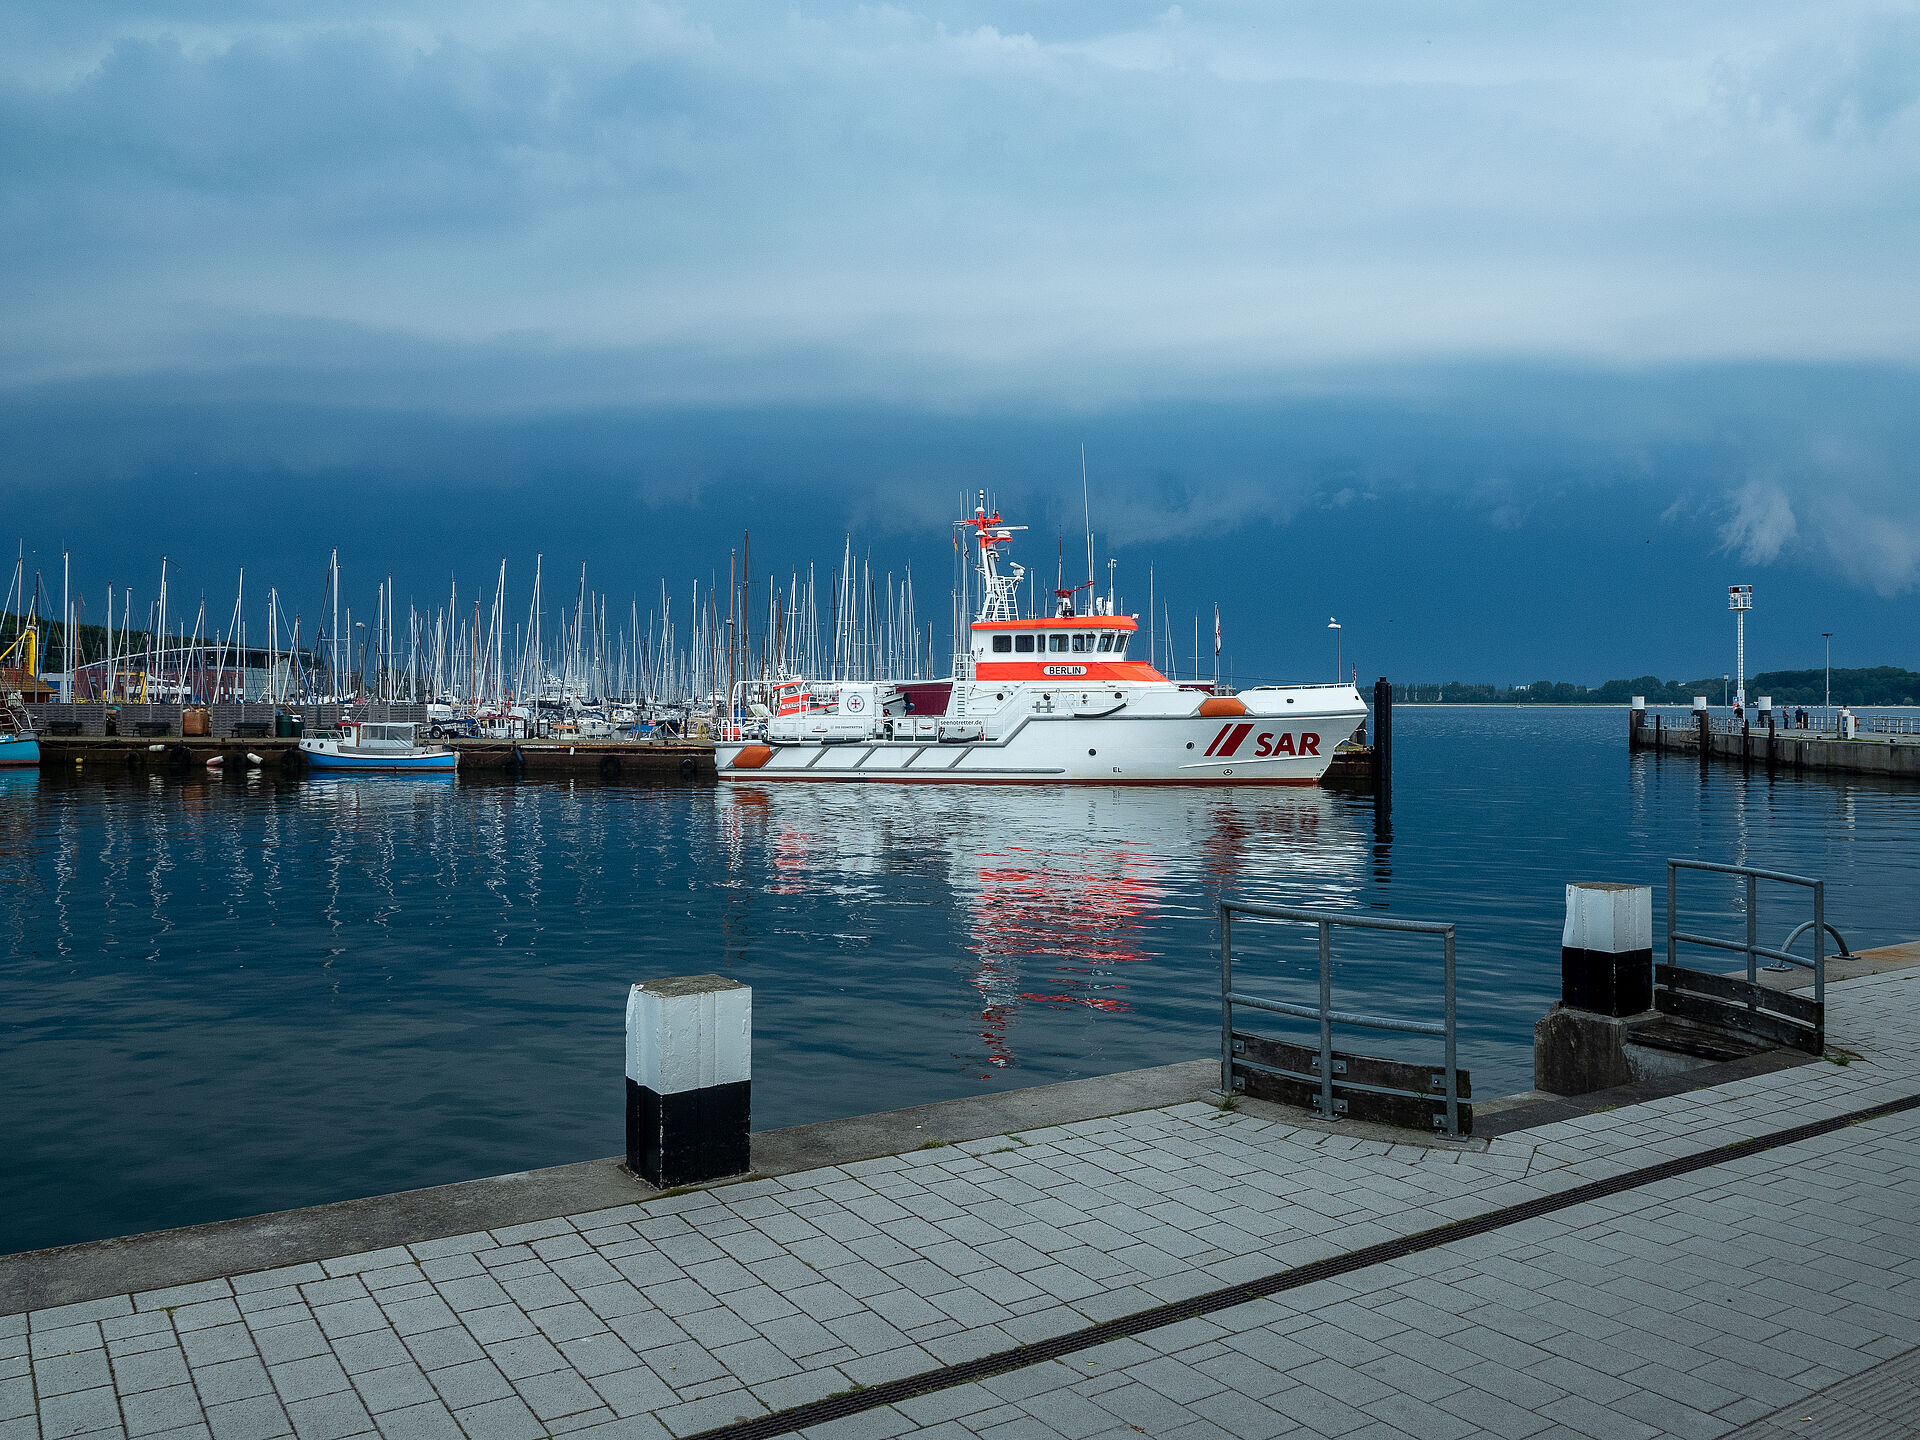 Der Seenotrettungskreuzer BERLIN liegt an seinem Liegeplatz im Hafen von Laboe und spiegelt sich im Hafenbecken. Dunkelblaue Regenwolken schweben über der Szenerie.